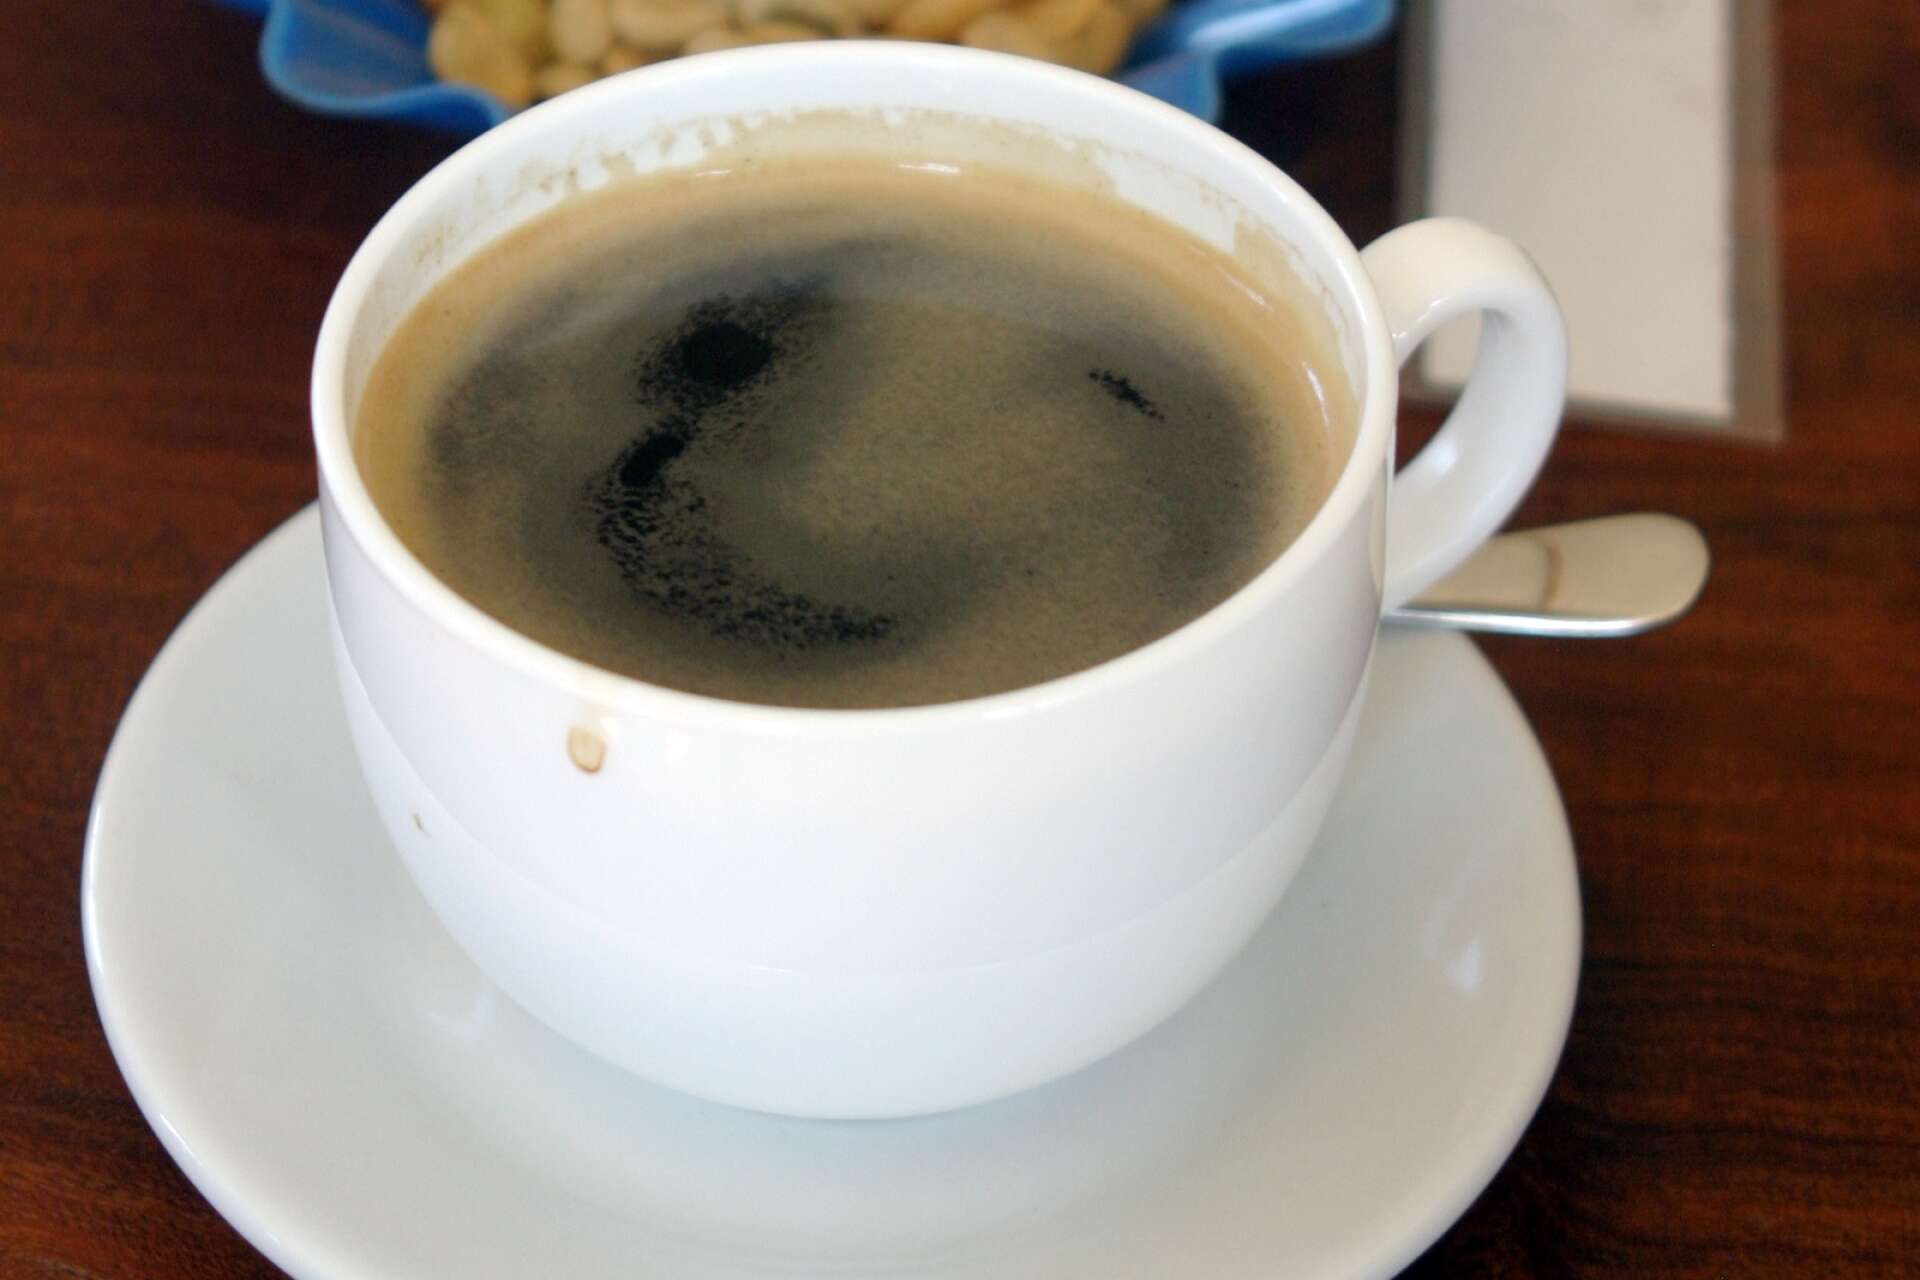 Är det ”kaffe” eller ”kaffet” i koppen? Det beror på vilken dialekt du talar.